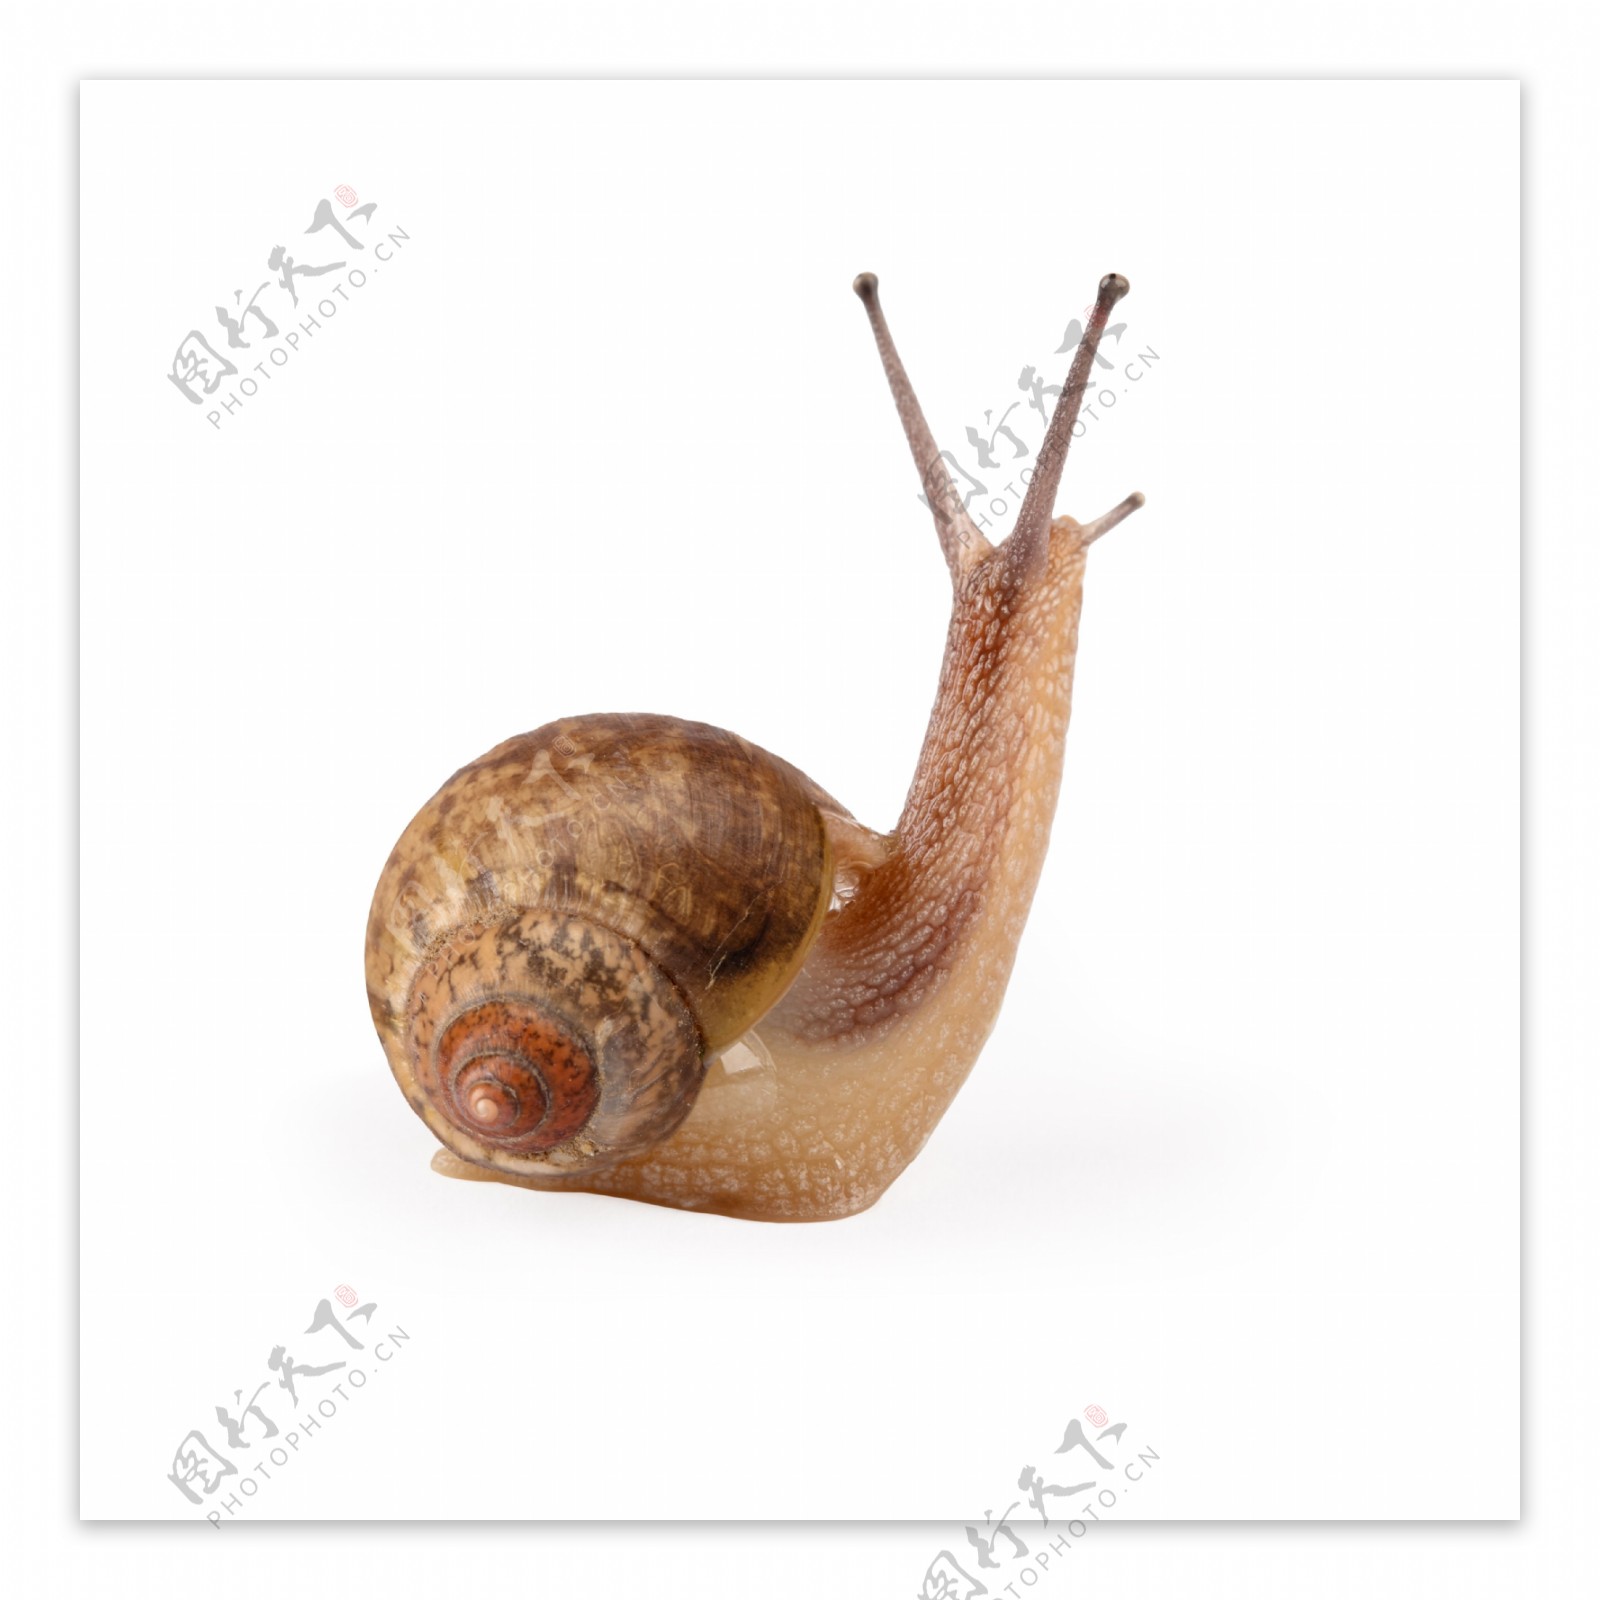 一只蜗牛